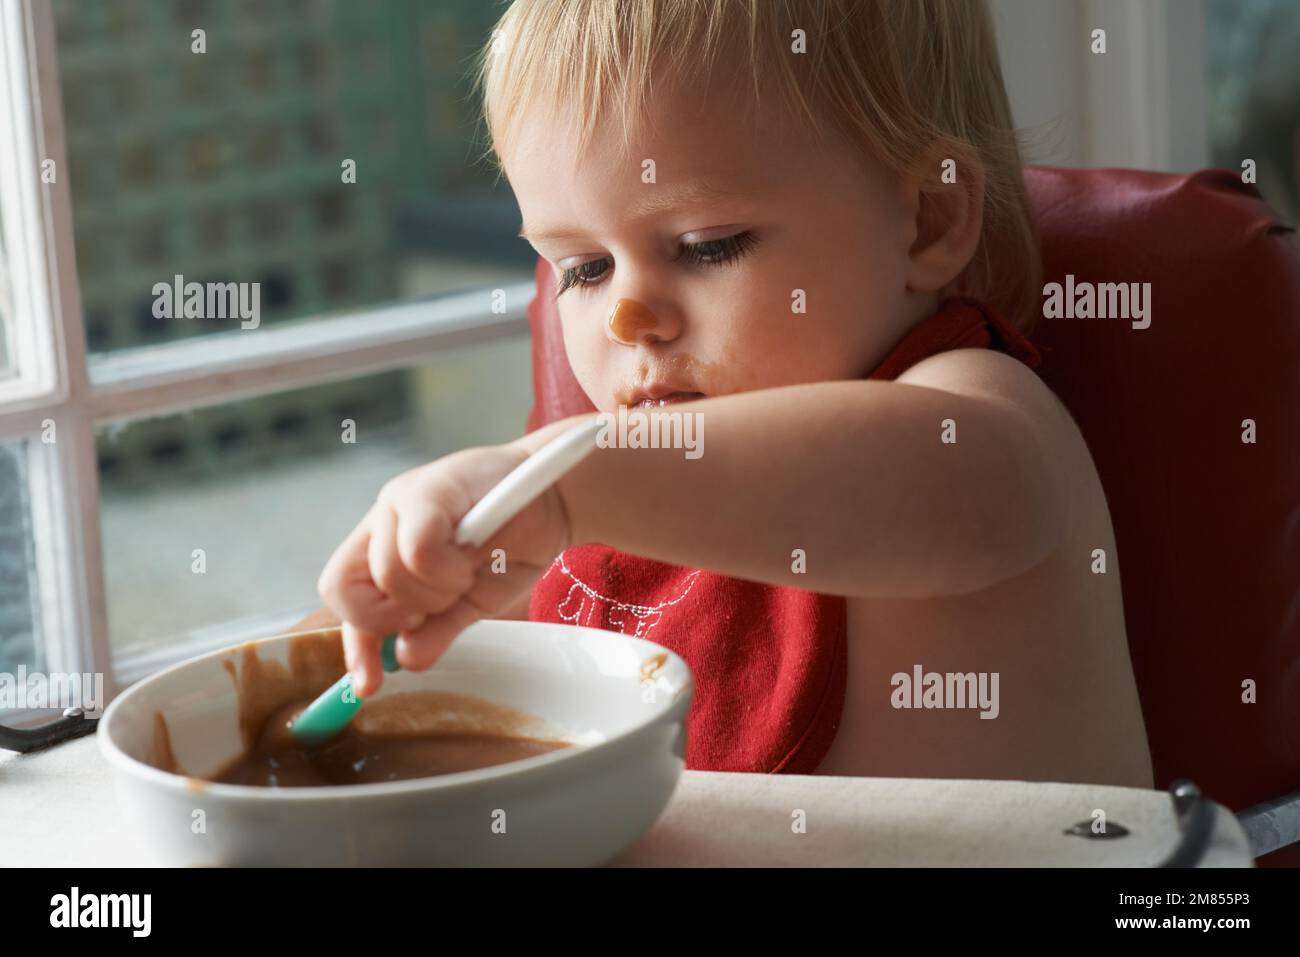 Wachsender Junge braucht sein Essen. Ein kleiner Junge, der in seinem Hochstuhl nach Herzenslust isst. Stockfoto